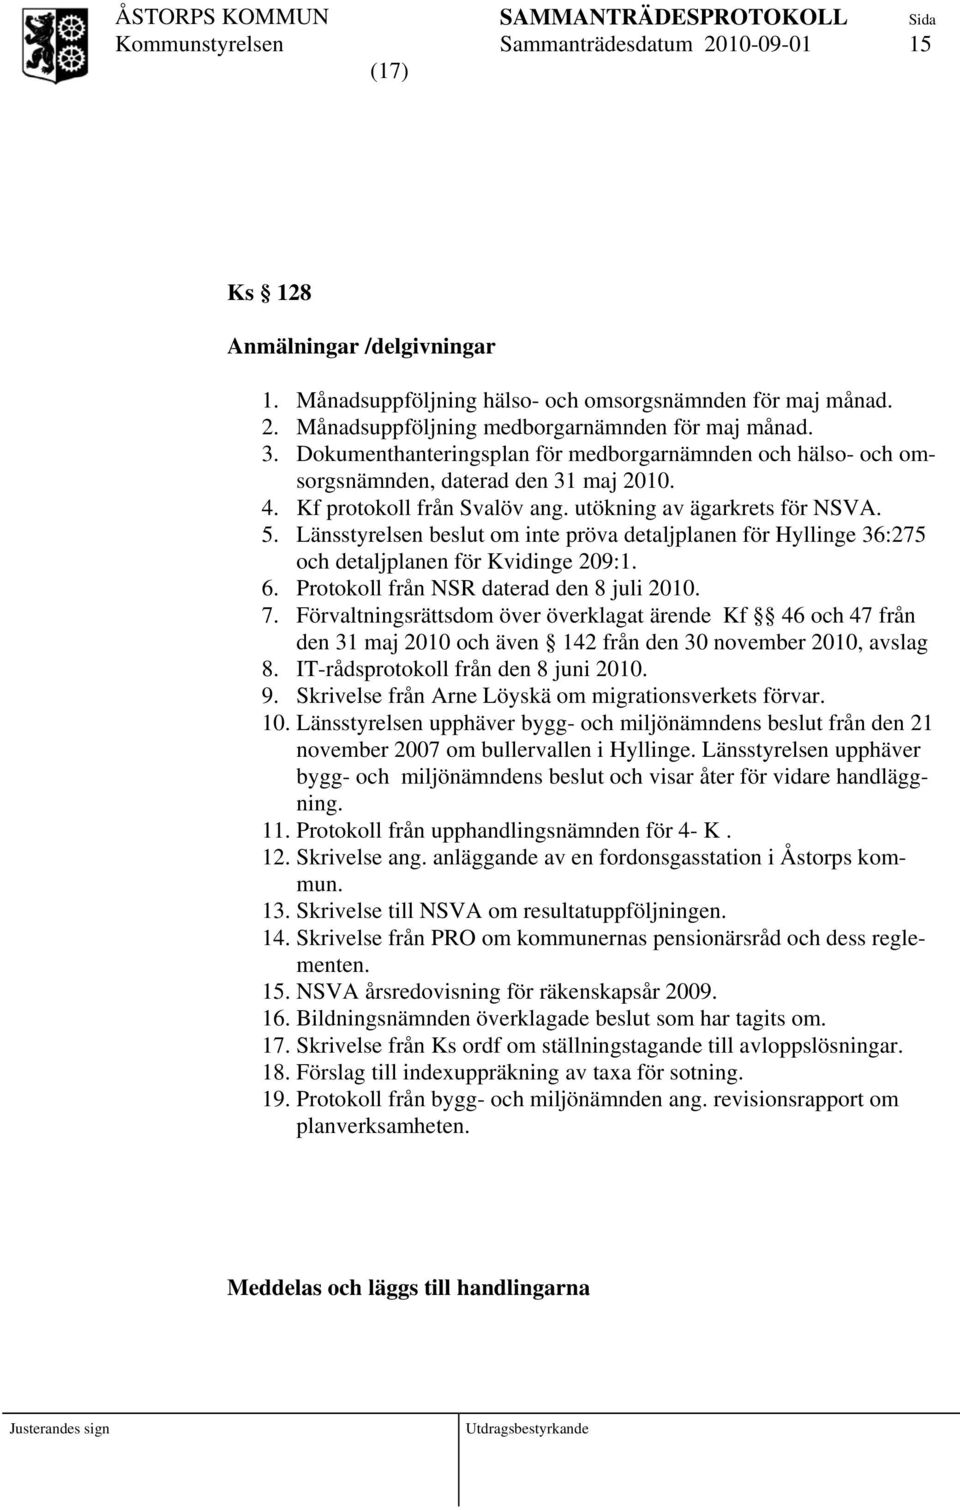 Länsstyrelsen beslut om inte pröva detaljplanen för Hyllinge 36:275 och detaljplanen för Kvidinge 209:1. 6. Protokoll från NSR daterad den 8 juli 2010. 7.